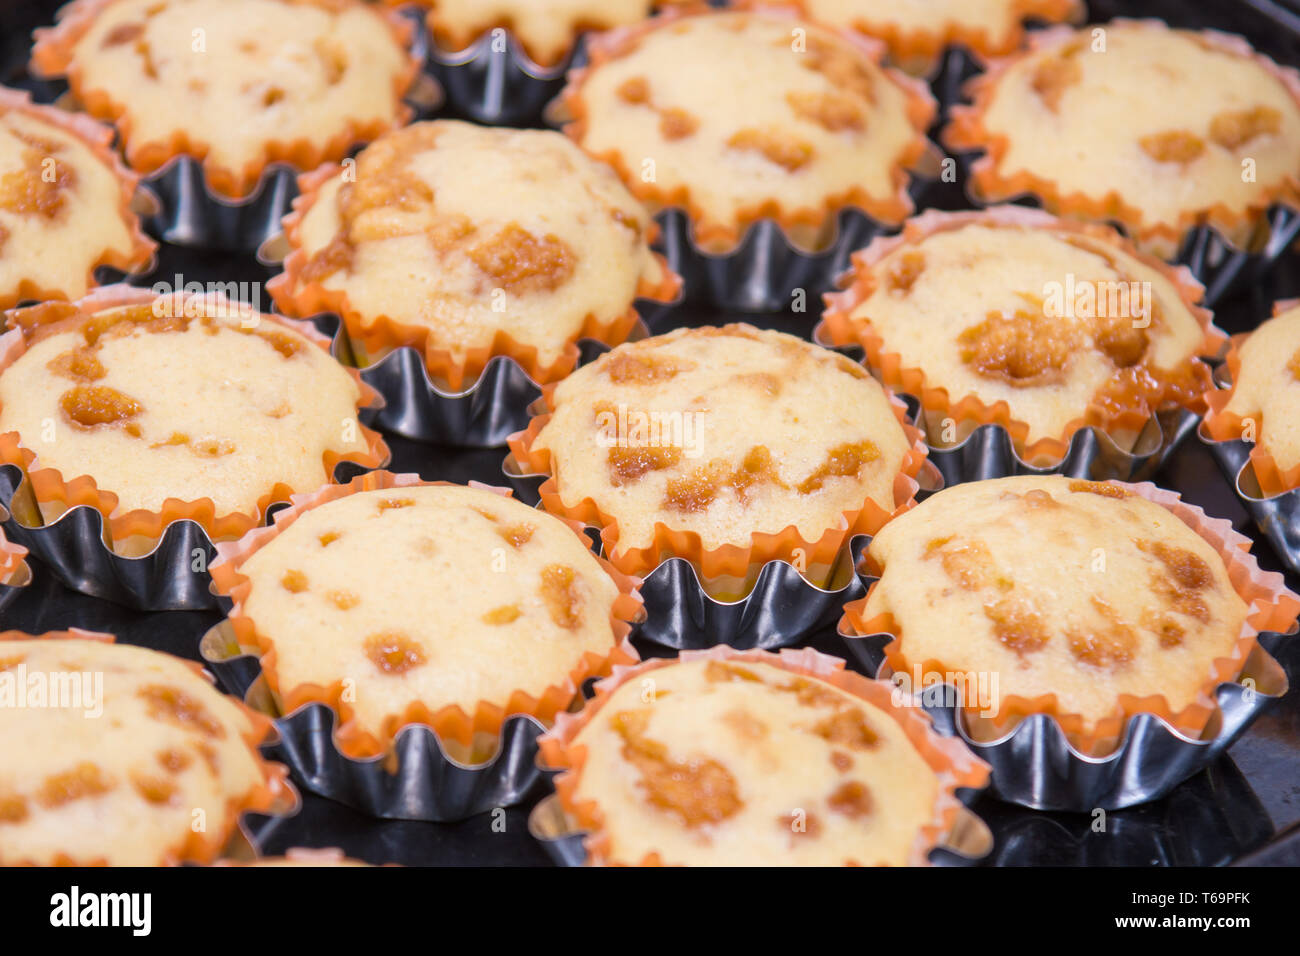 Ein Blick auf verschiedene frisch gebackene Kuchen in Metalldosen Stockfoto